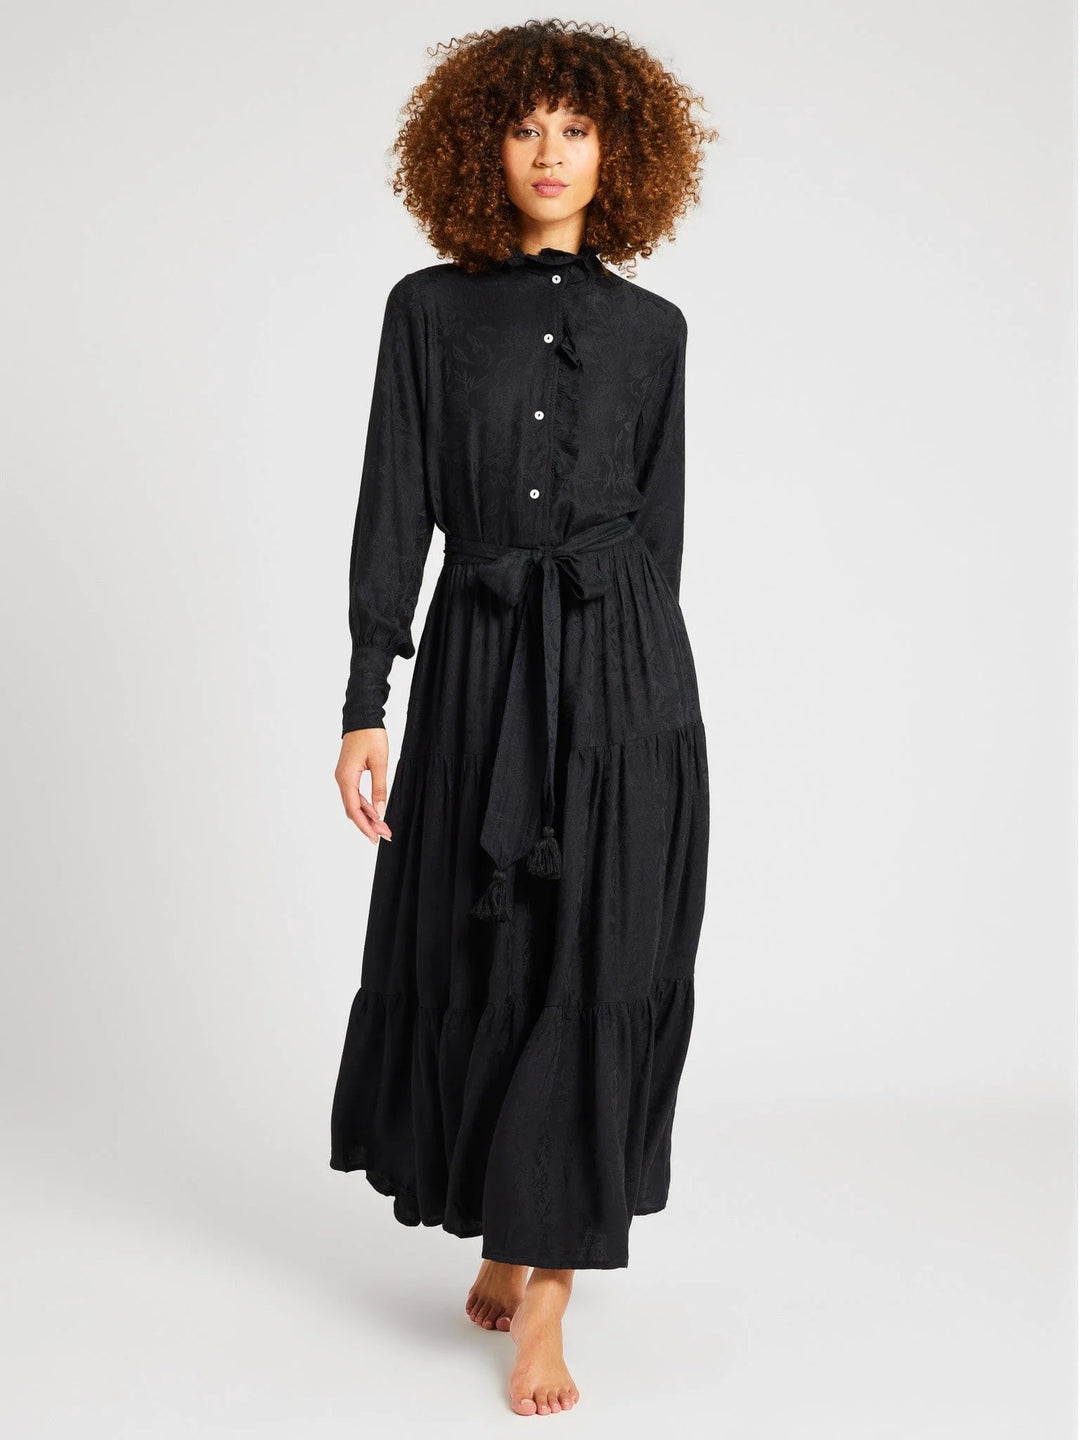 Mille – Valentina Dress in Black Jacquard